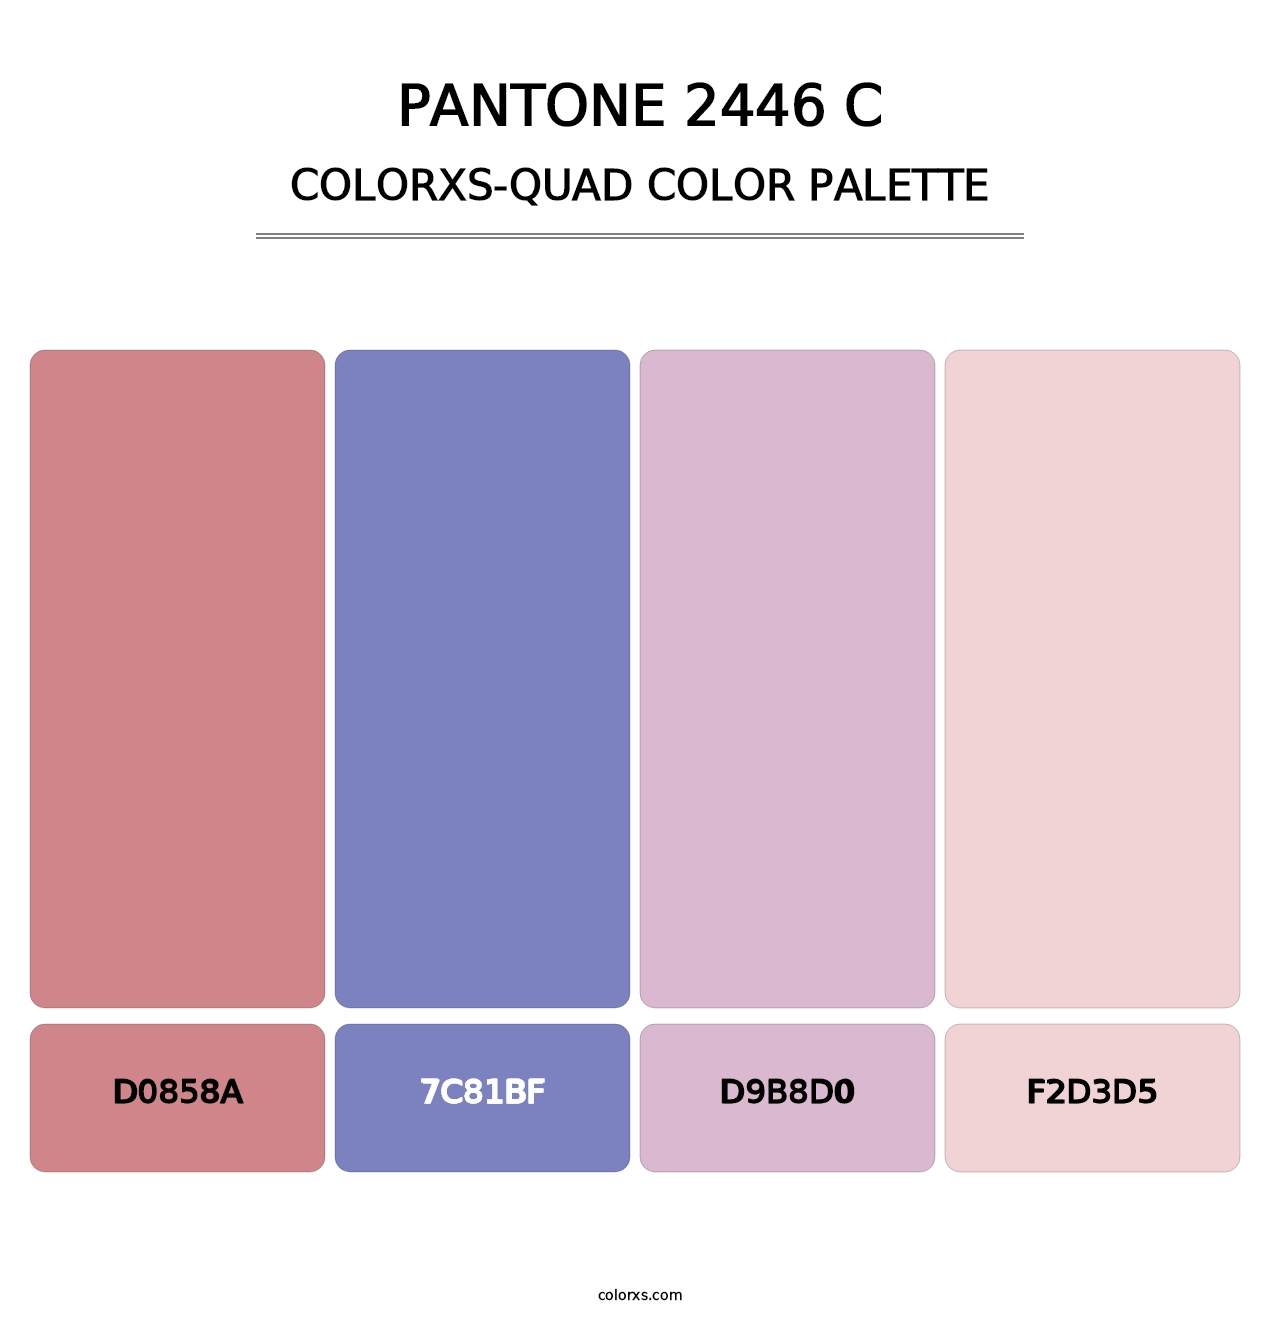 PANTONE 2446 C - Colorxs Quad Palette